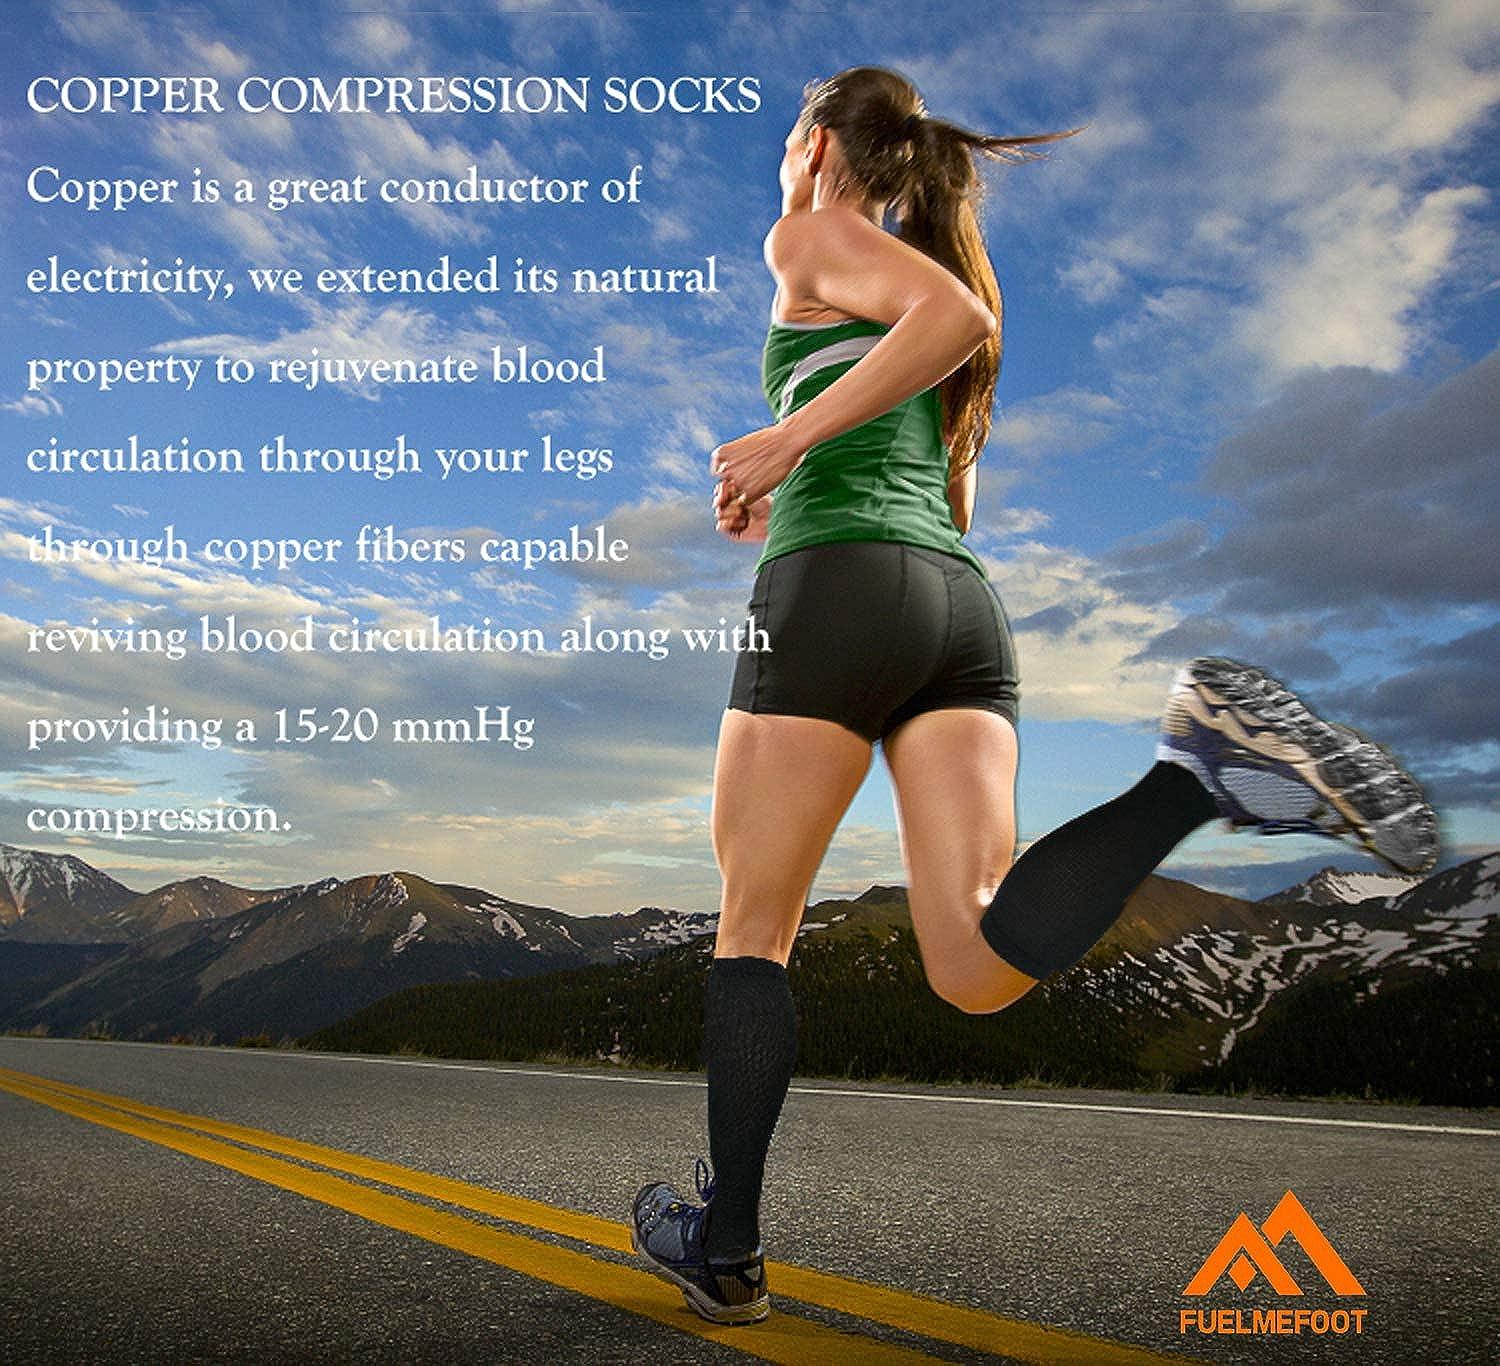 3 Pack Copper Compression Socks - Compression Socks Women & Men Circulation  - Best for Medical,Running,Athletic 00 Black Large-X-Large